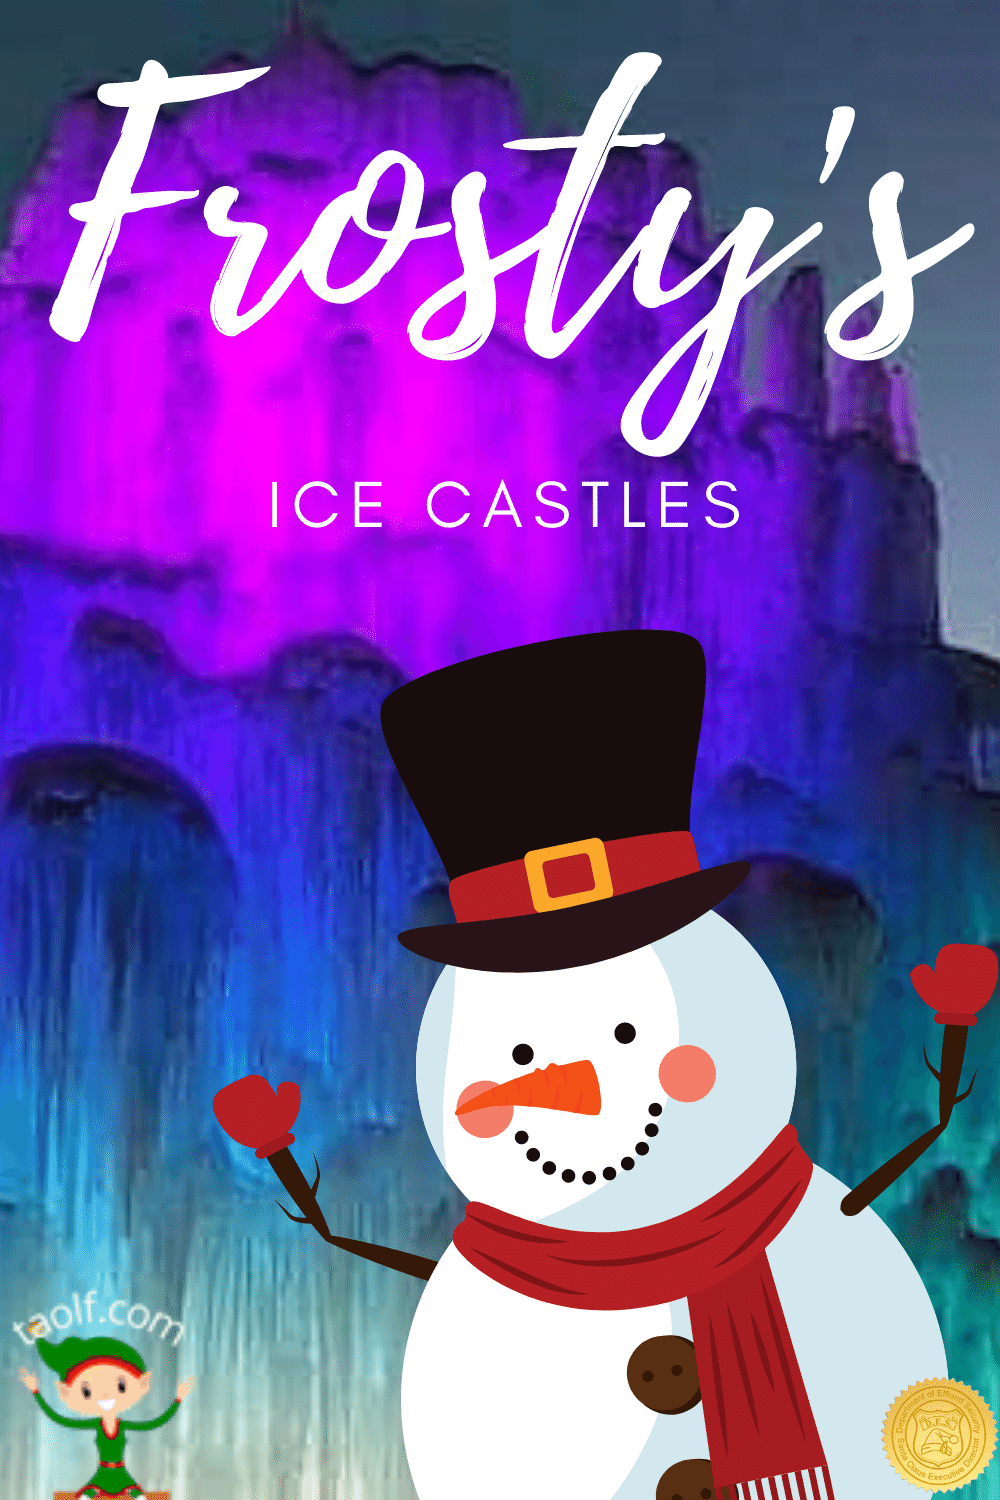 Frosty's Ice Castle Ideas